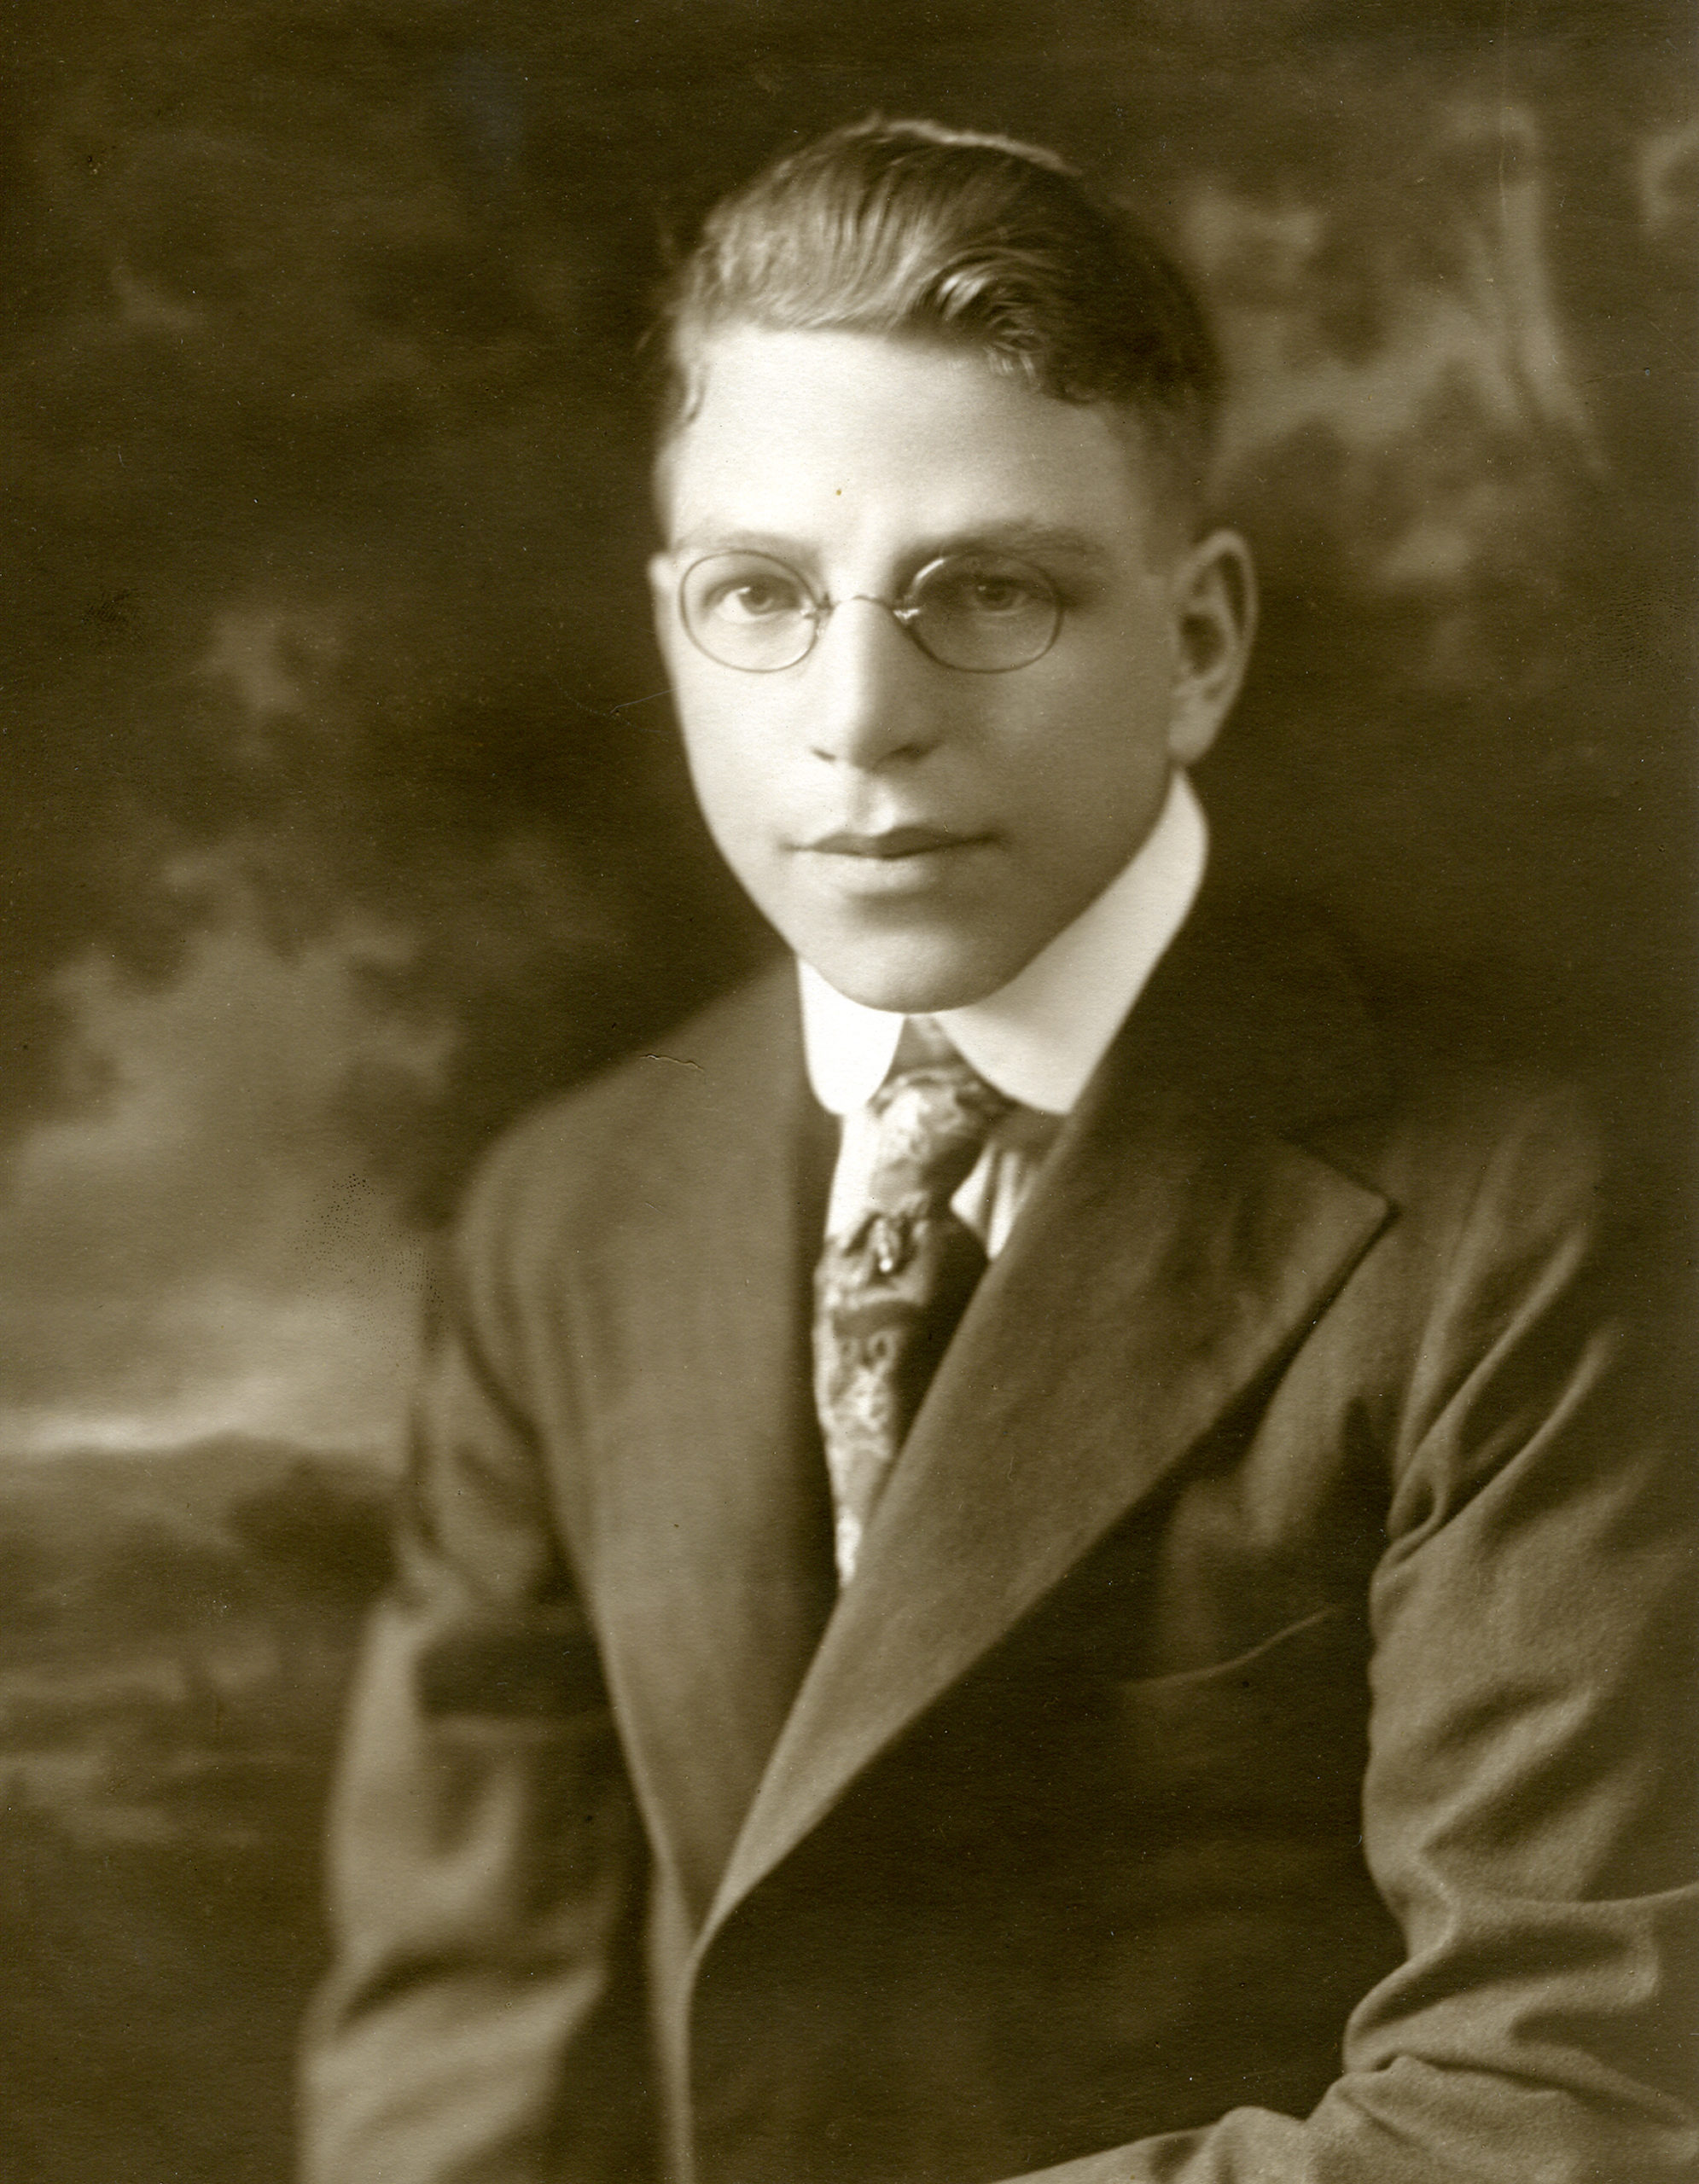 1928 image